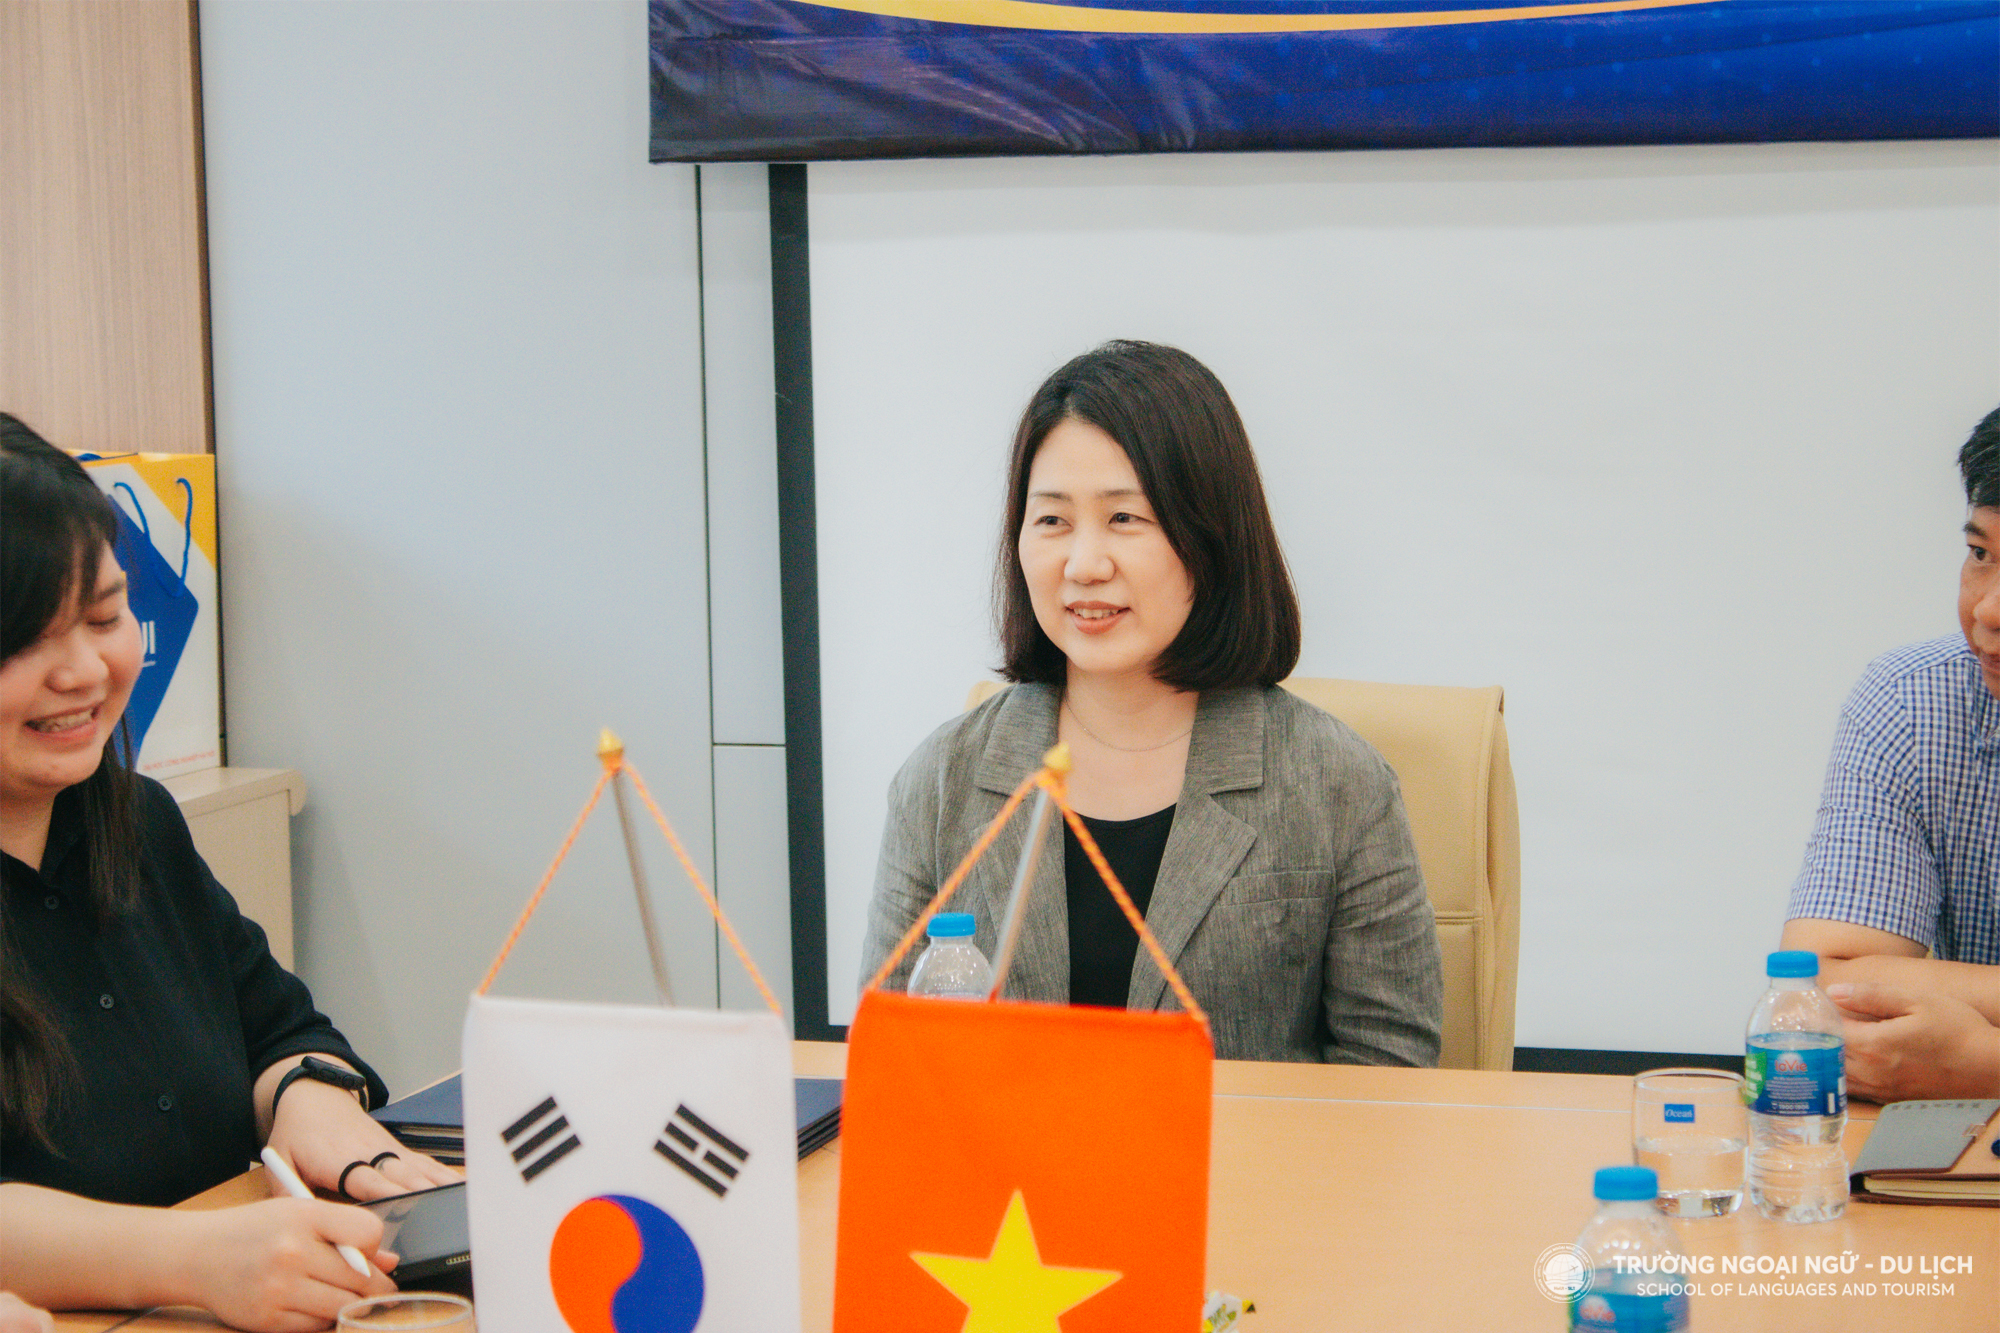 Ký kết biên bản ghi nhớ hợp tác (MOU) với Đại học Pai Chai Hàn Quốc